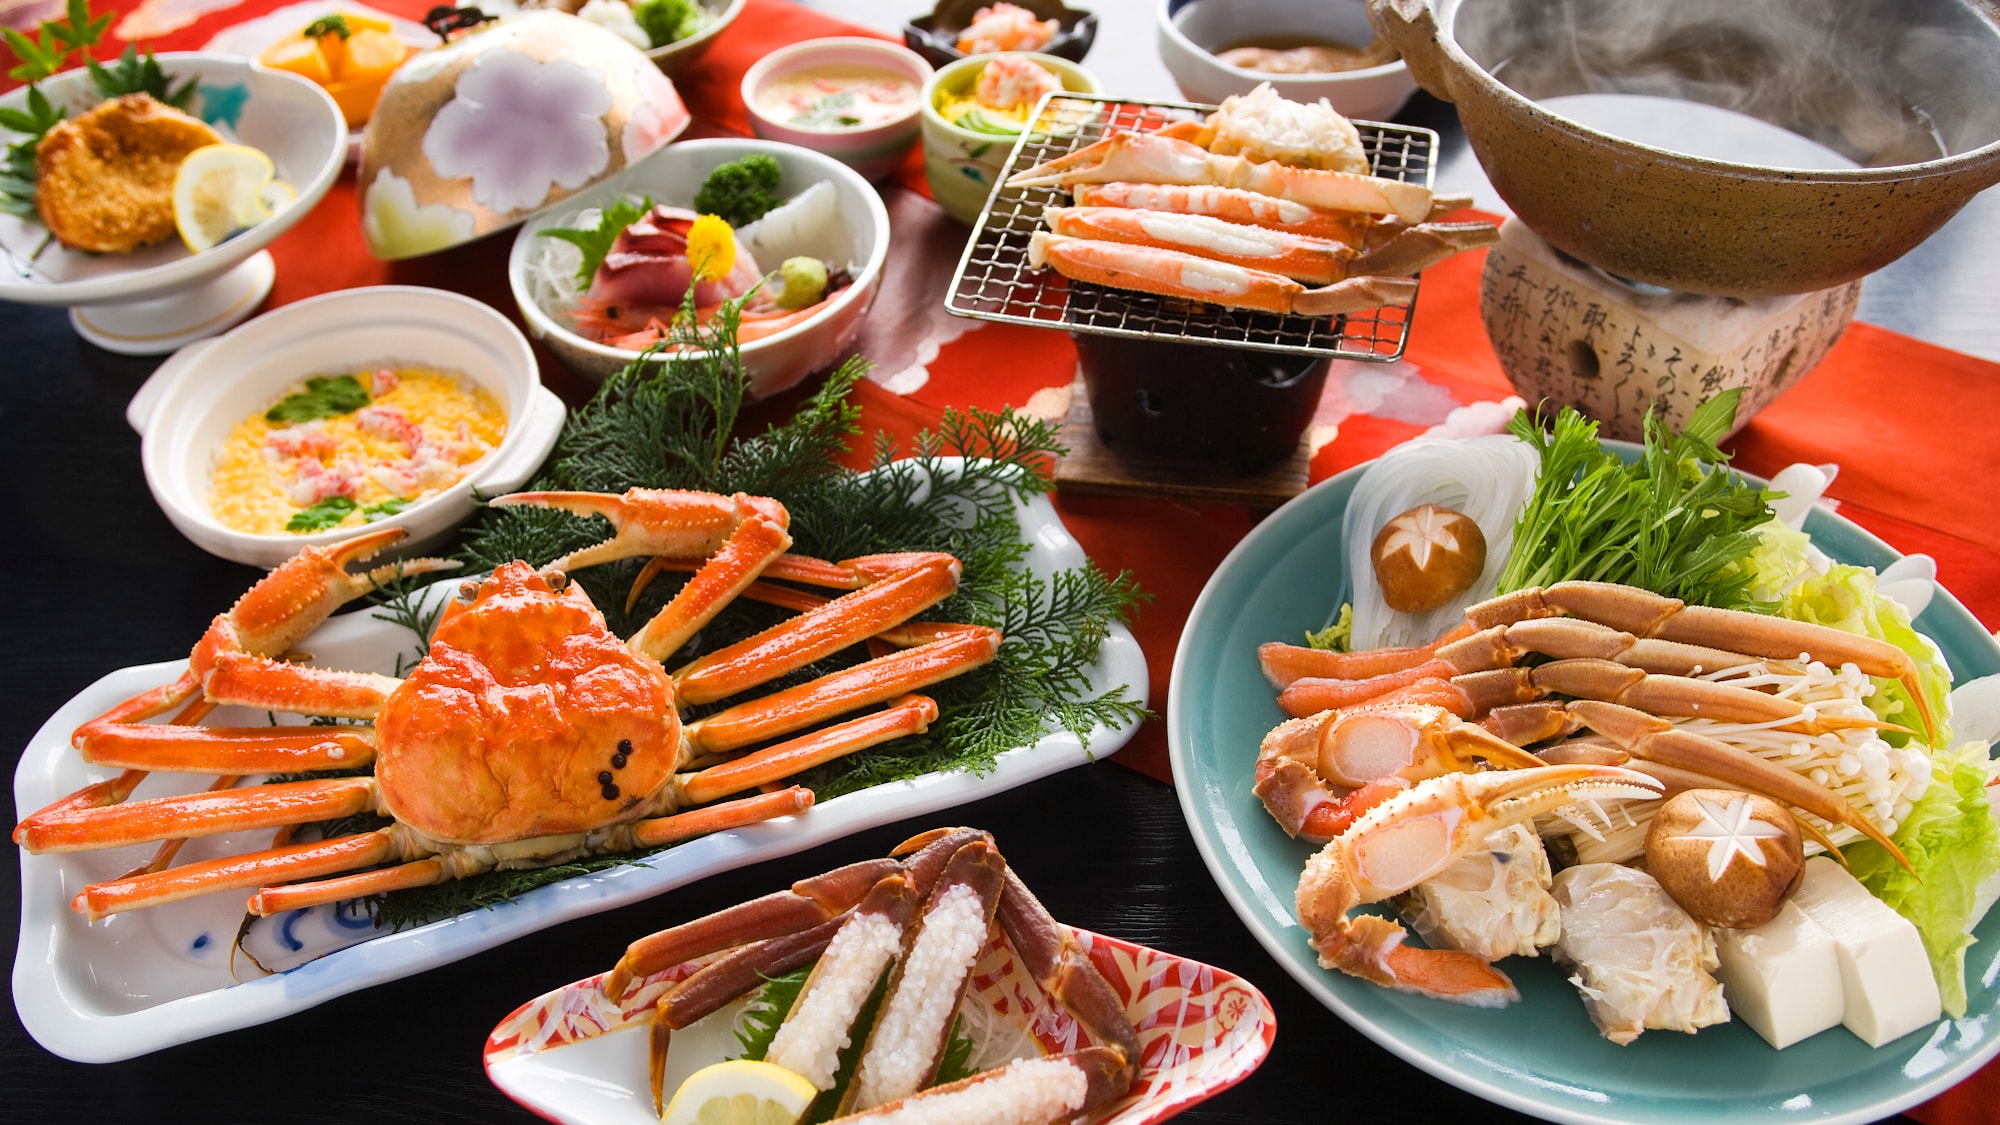 Full course of dancing crab sashimi & crab shabu-shabu